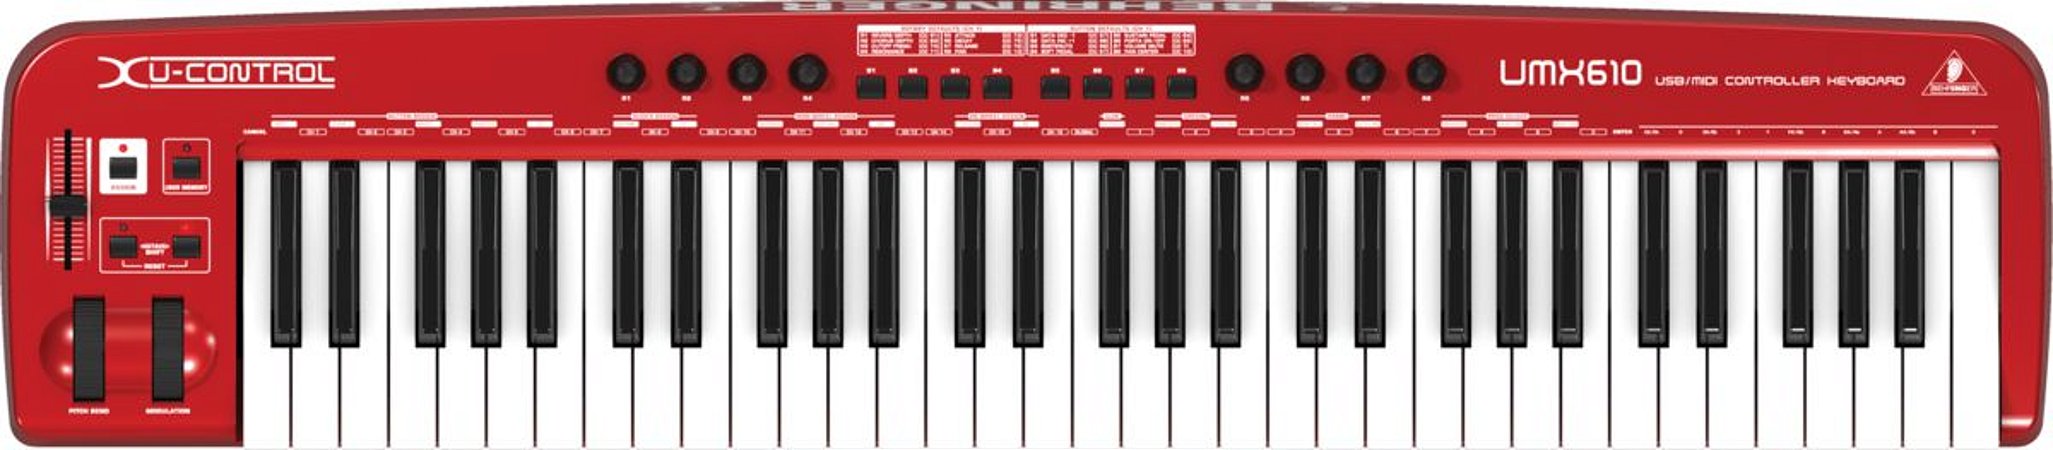 Controlador USB/MIDI - UMX610 - Behringer